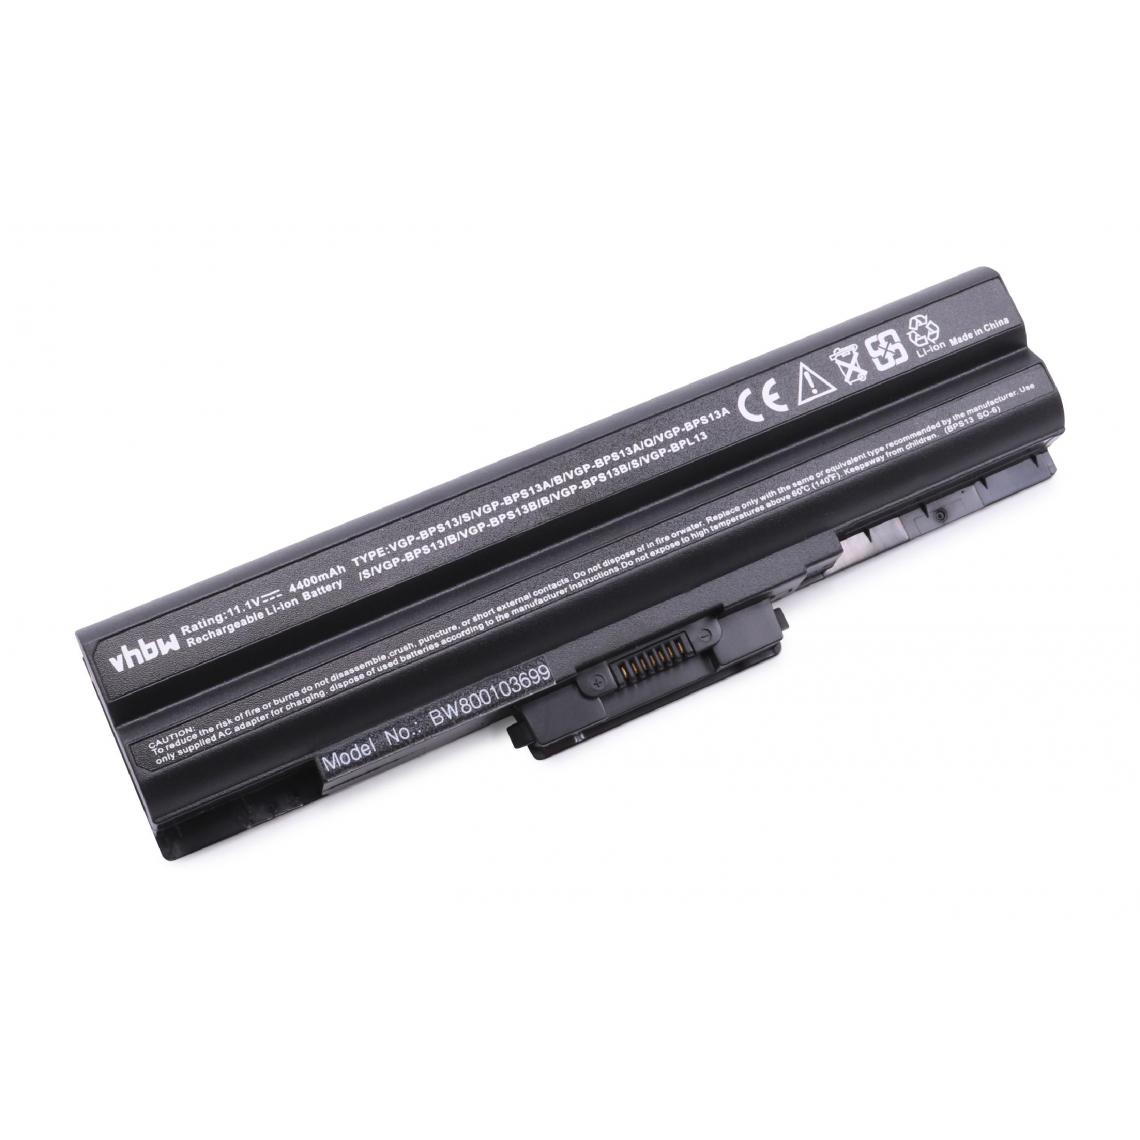 Vhbw - vhbw Batterie compatible avec Sony Vaio VGN-SR23H/B, VGN-SR240J/B, VGN-SR240N/B, VGN-SR25G/B ordinateur portable (4400mAh, 11,1V, noir) - Batterie PC Portable